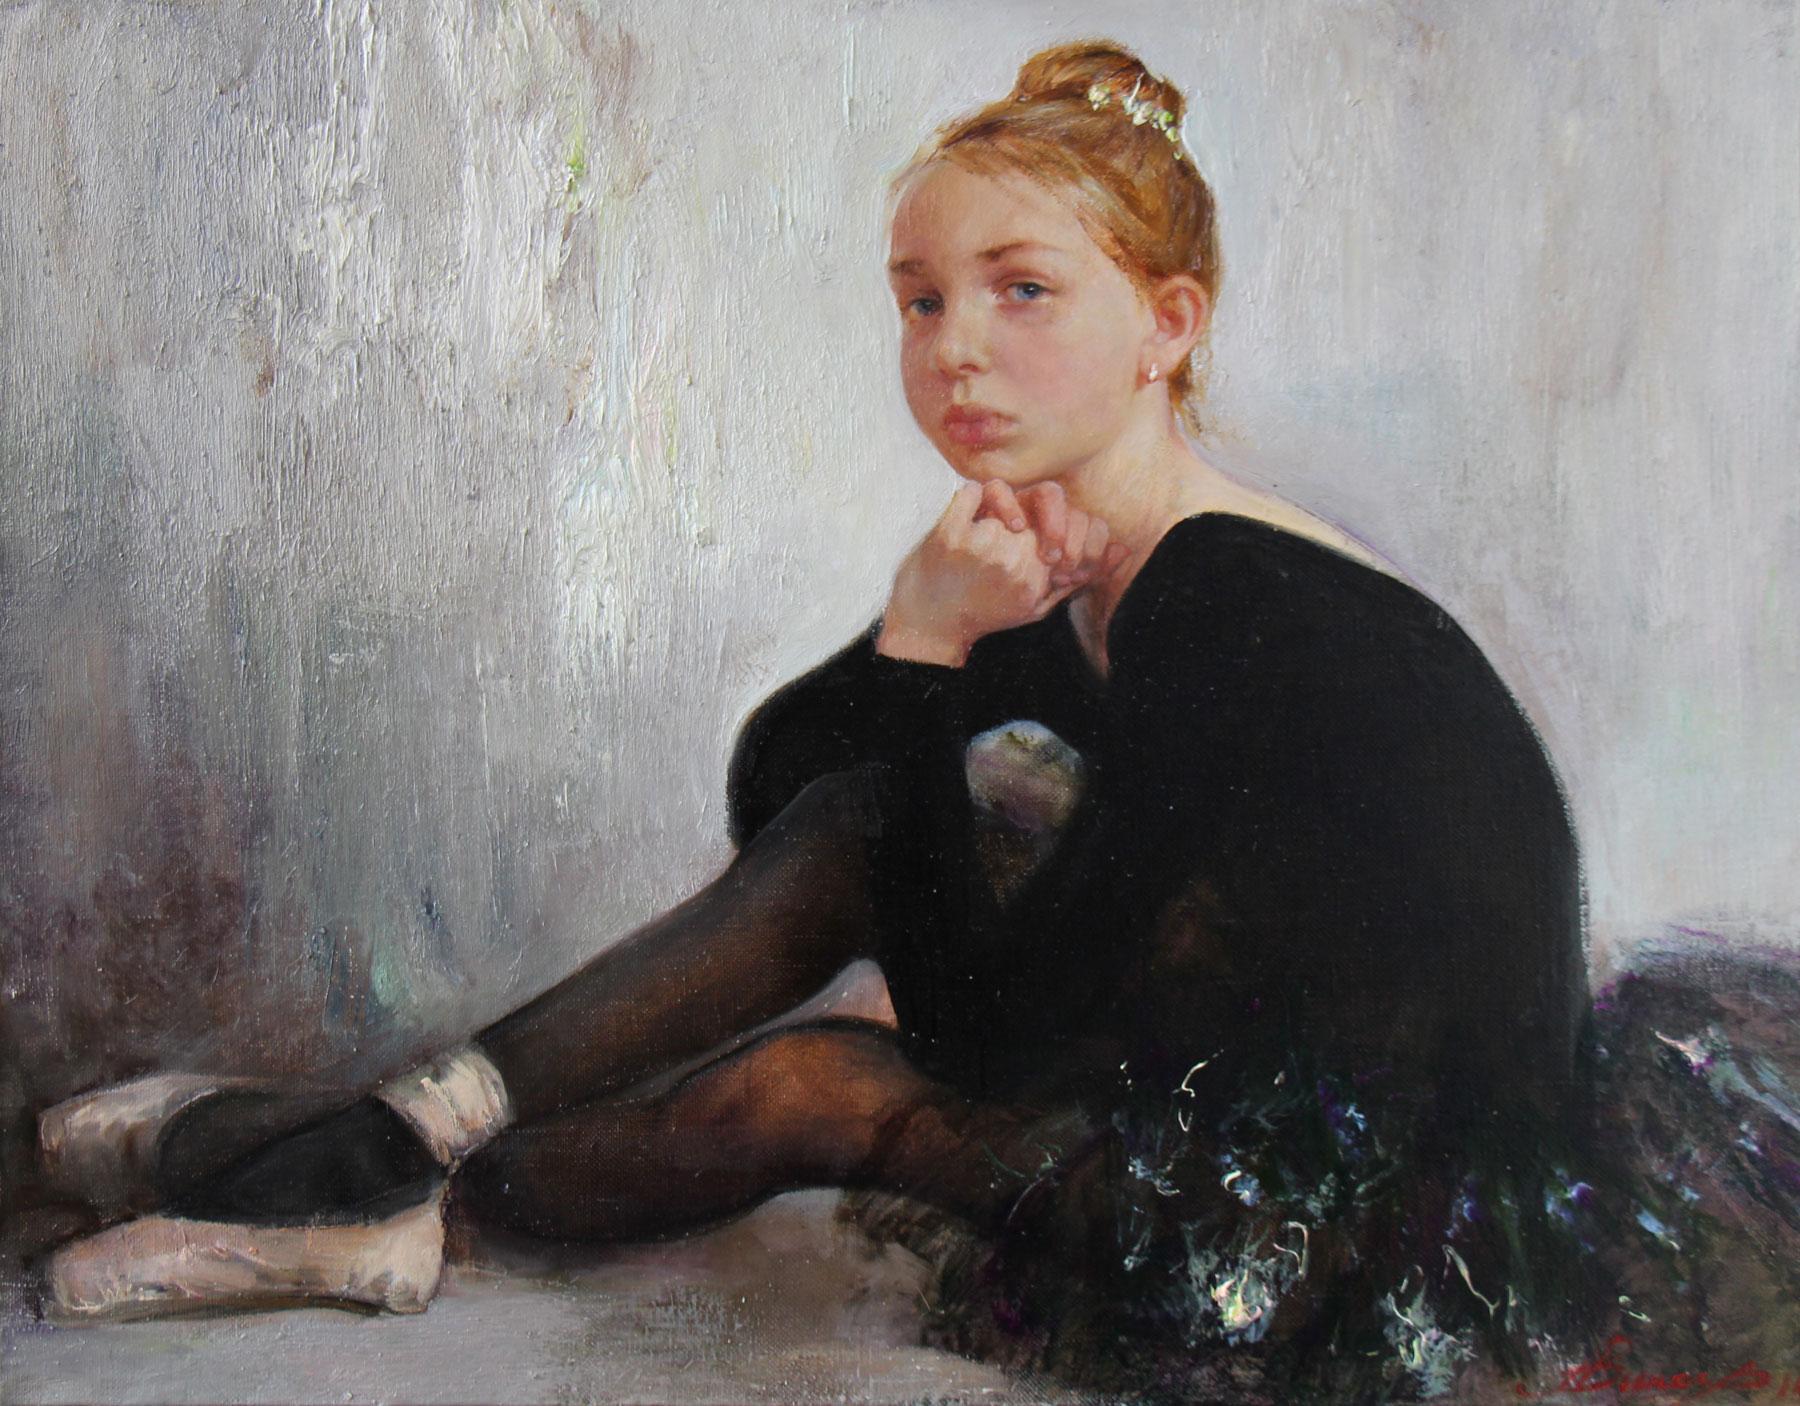 Little ballerina. Original modern art painting